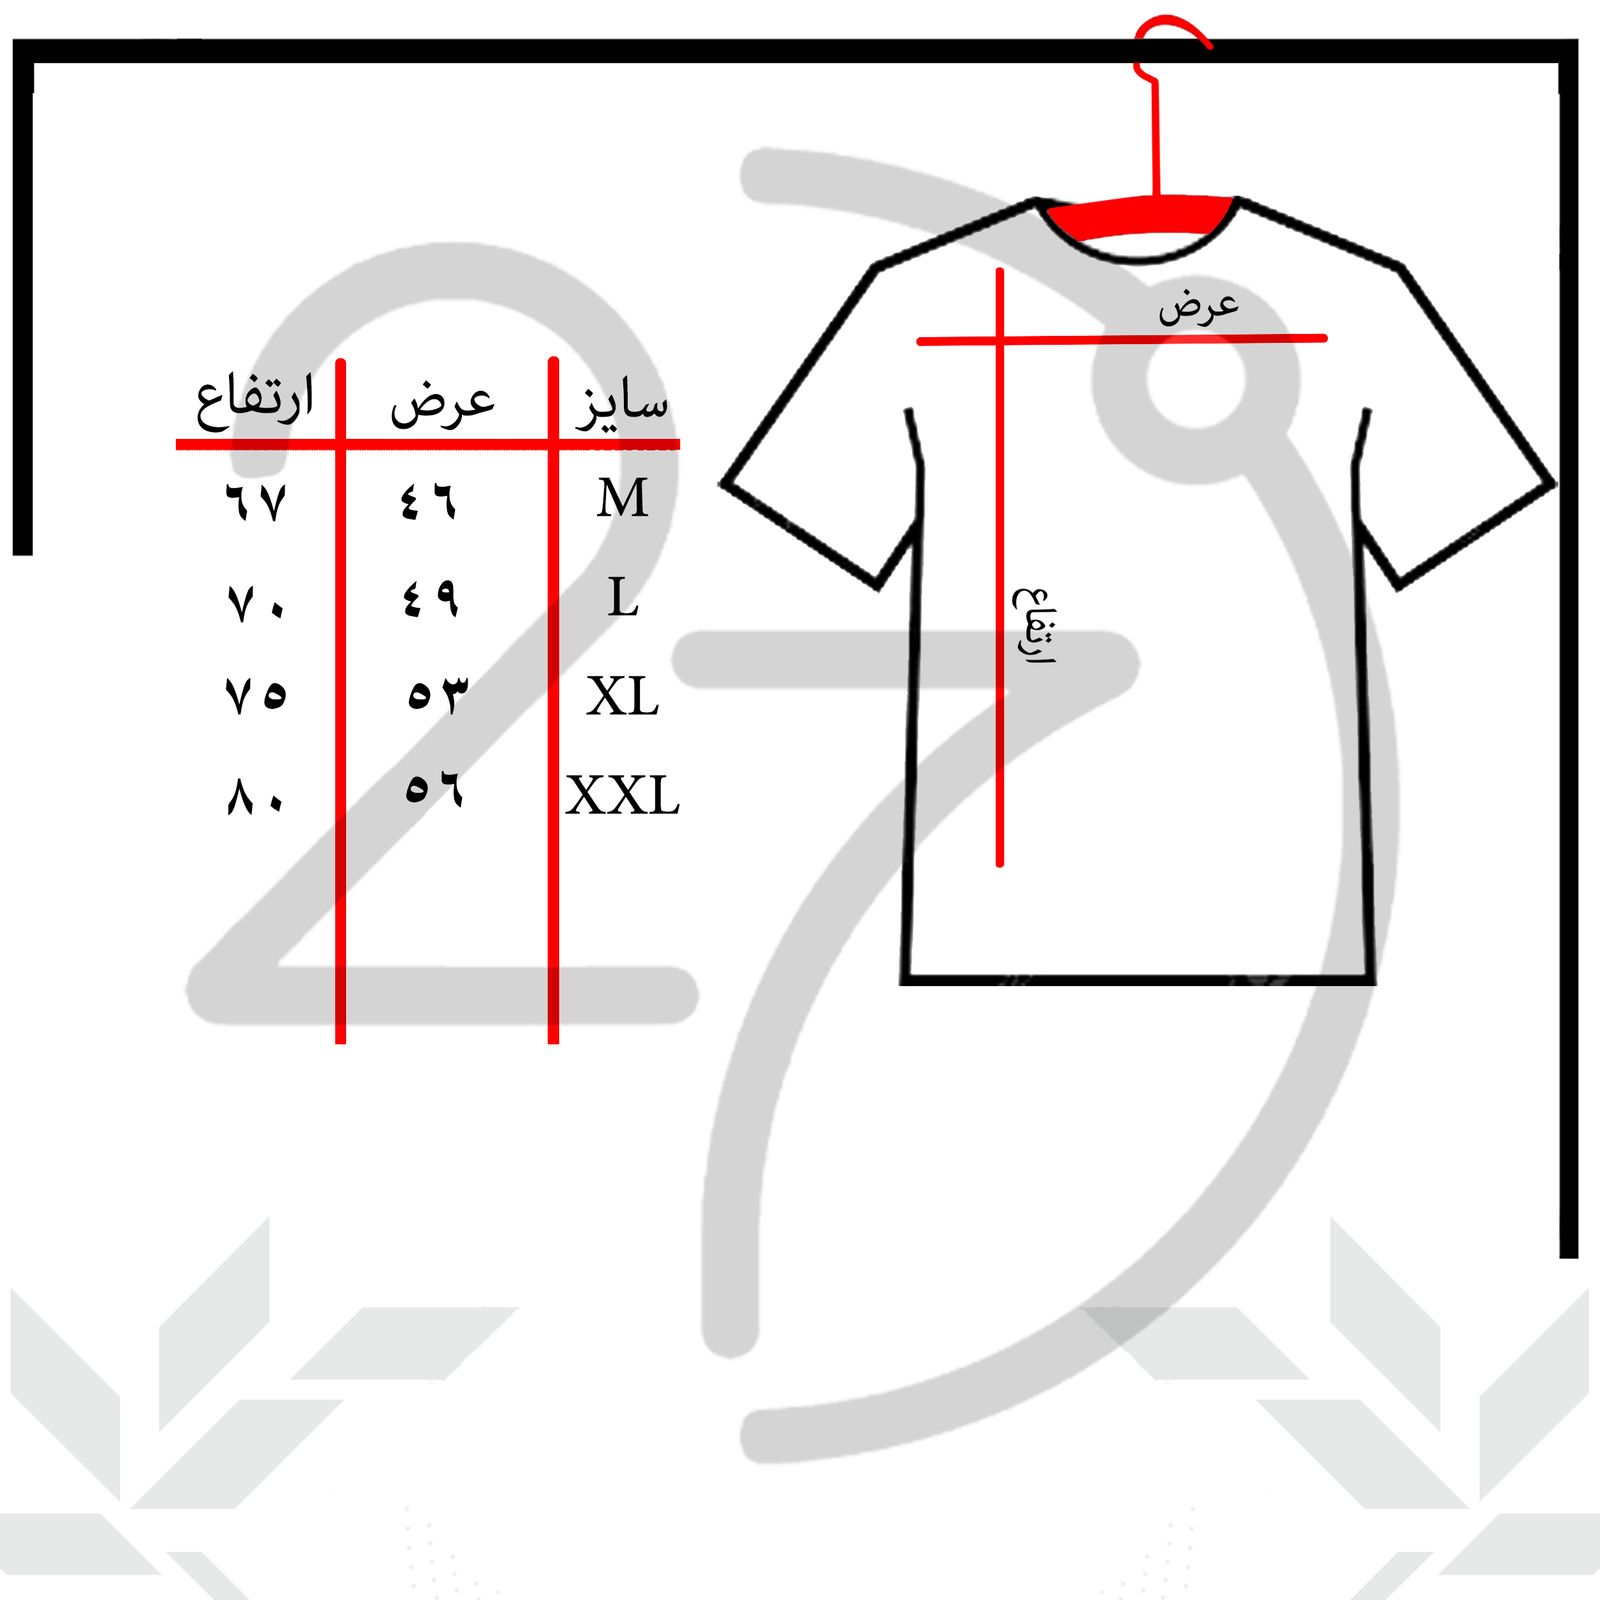 تی شرت آستین کوتاه مردانه 27 مدل ماشین کد KV16 رنگ سفید -  - 3